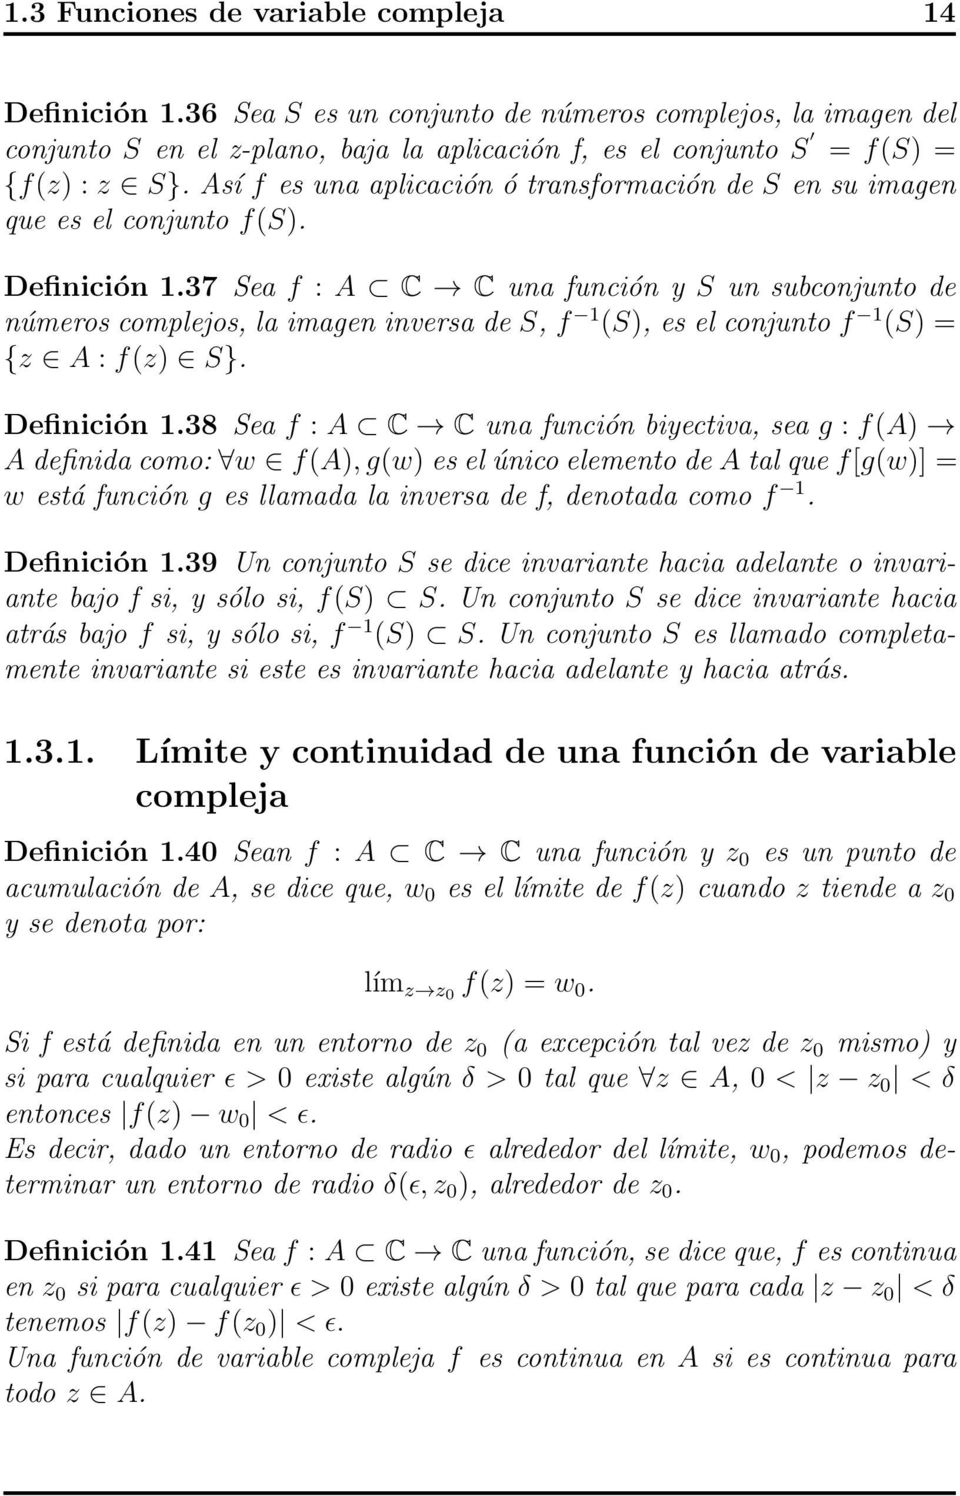 37 Sea f : A C C una función y S un subconjunto de números complejos, la imagen inversa de S, f 1 (S), es el conjunto f 1 (S) = {z A : f(z) S}. Definición 1.